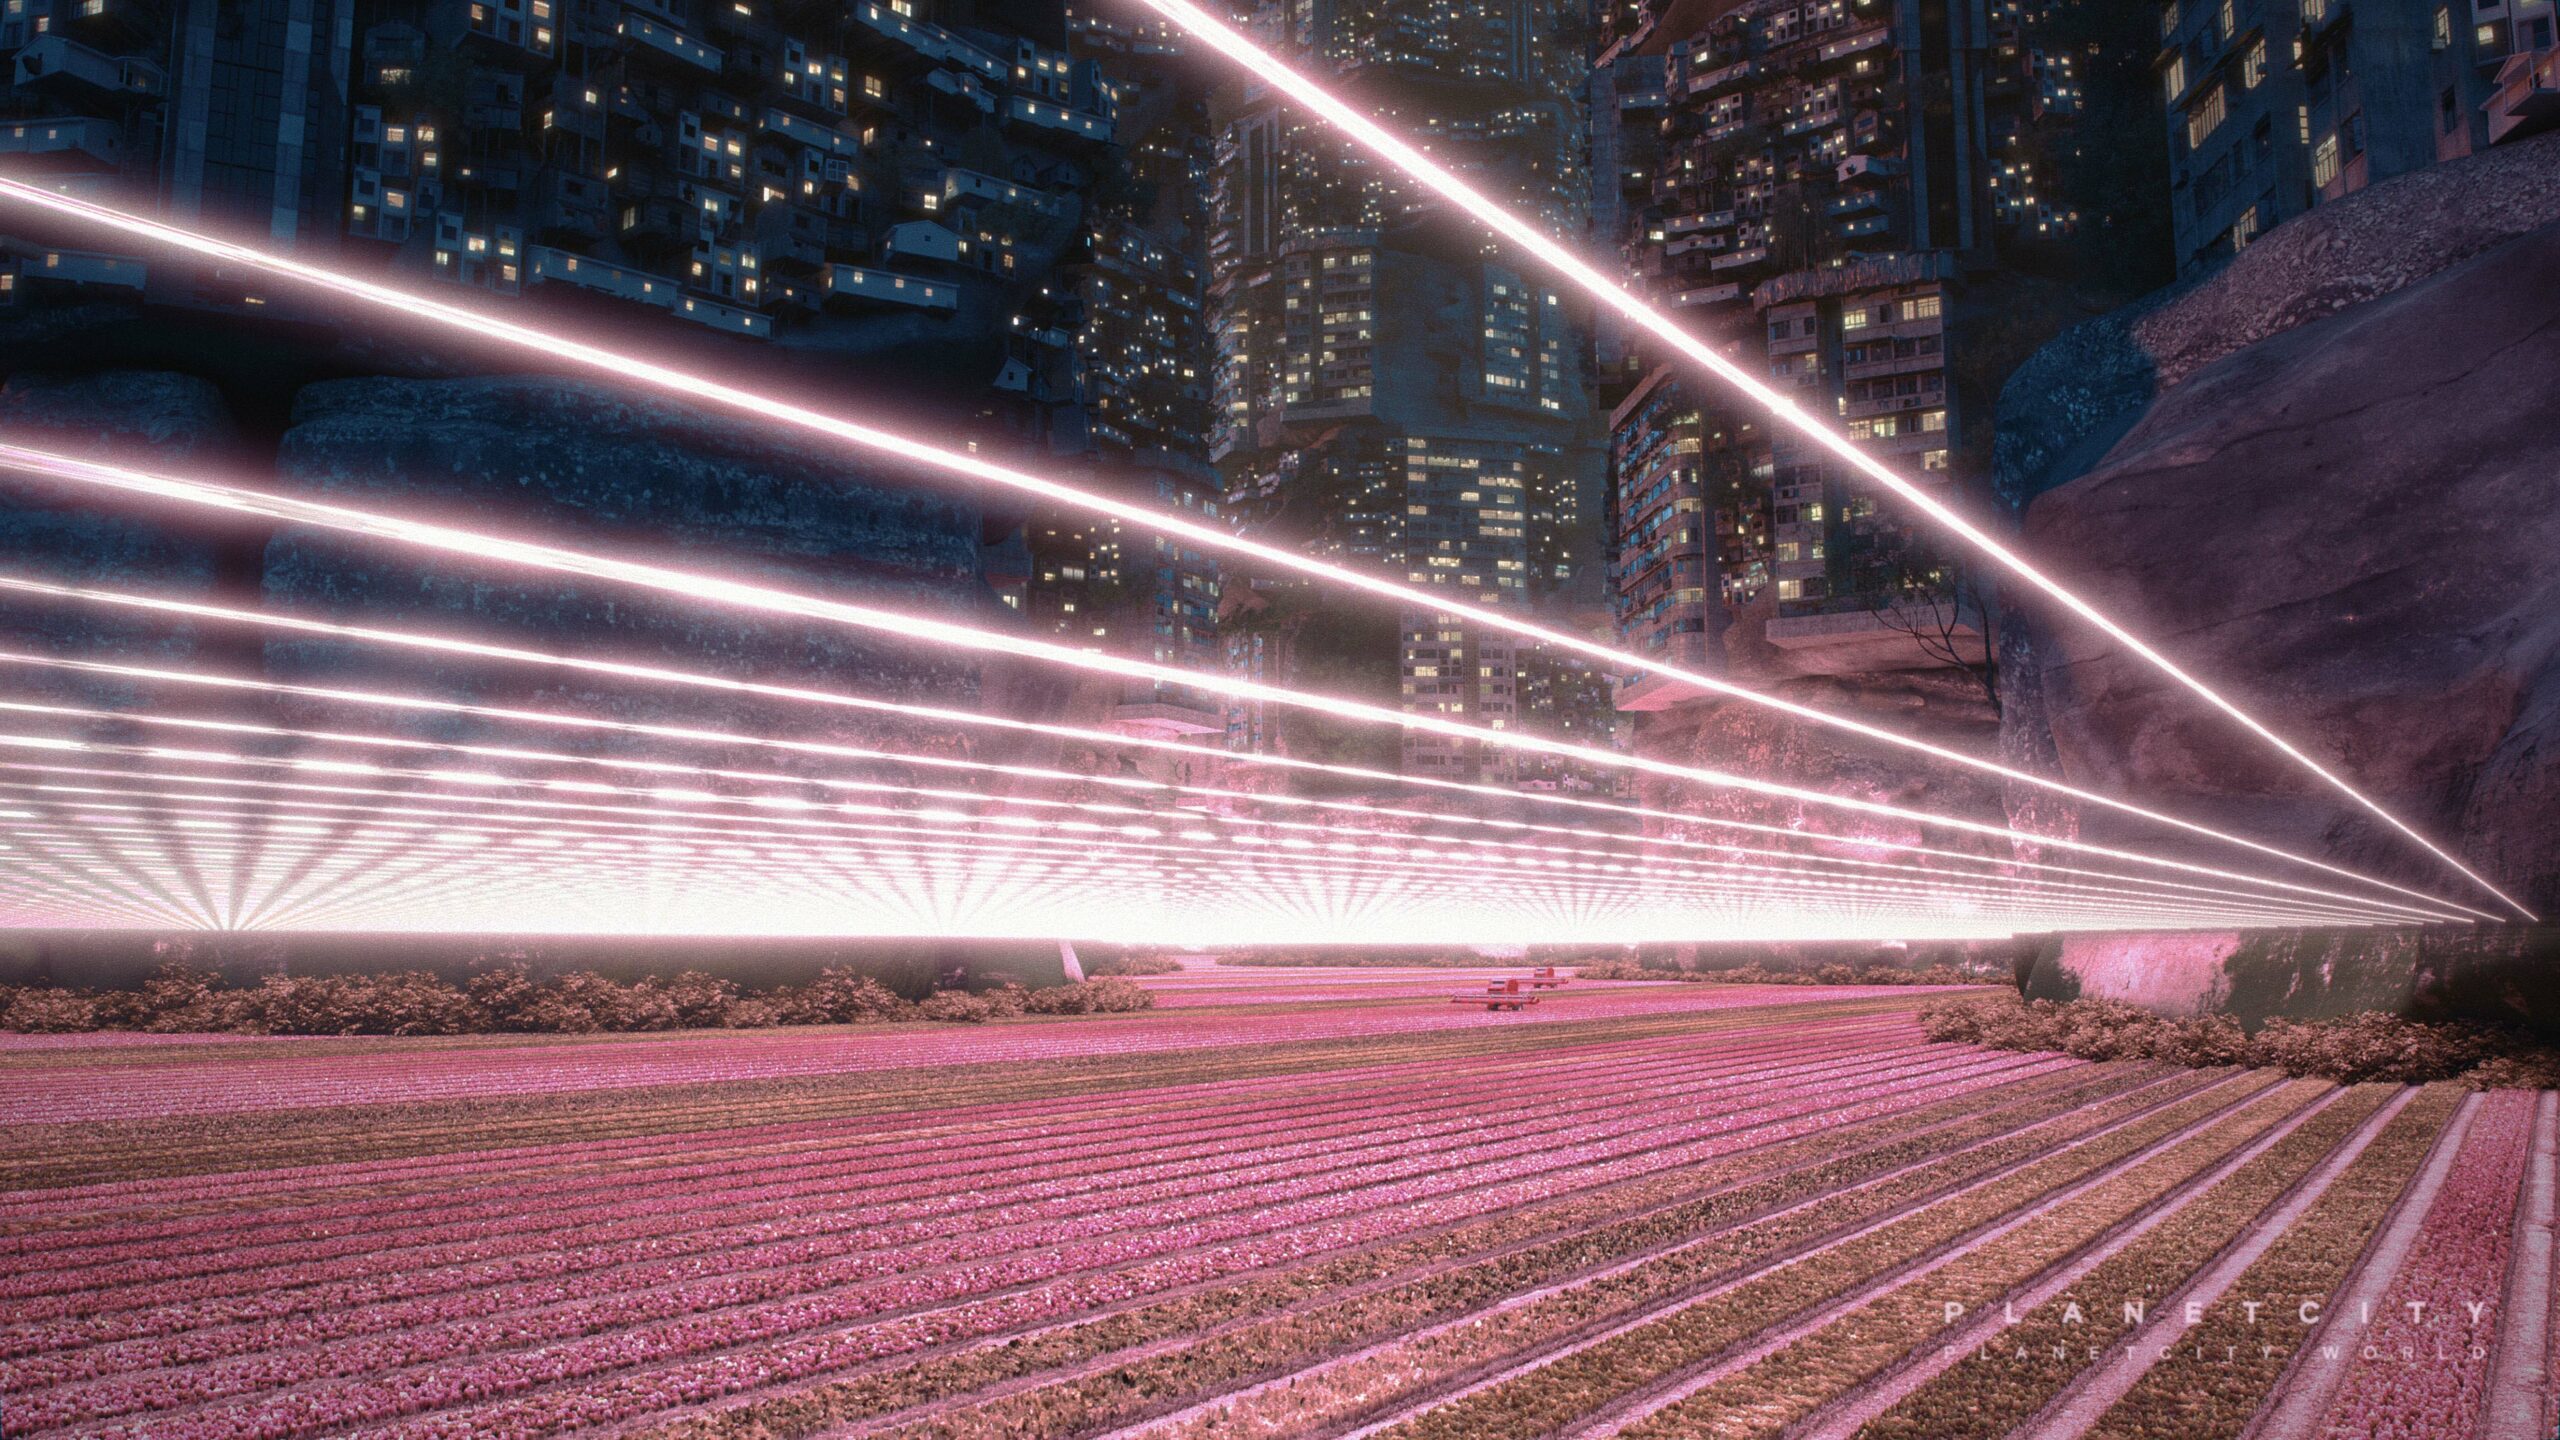 Der futuristischer Entwurf einer Megastadt im Jahr 2050, in der die gesamte Erdbevölkerung – 10 Milliarden Menschen – lebt. Filmstill aus "Planet City" (2020) von Architekt und Regisseur Liam Young.